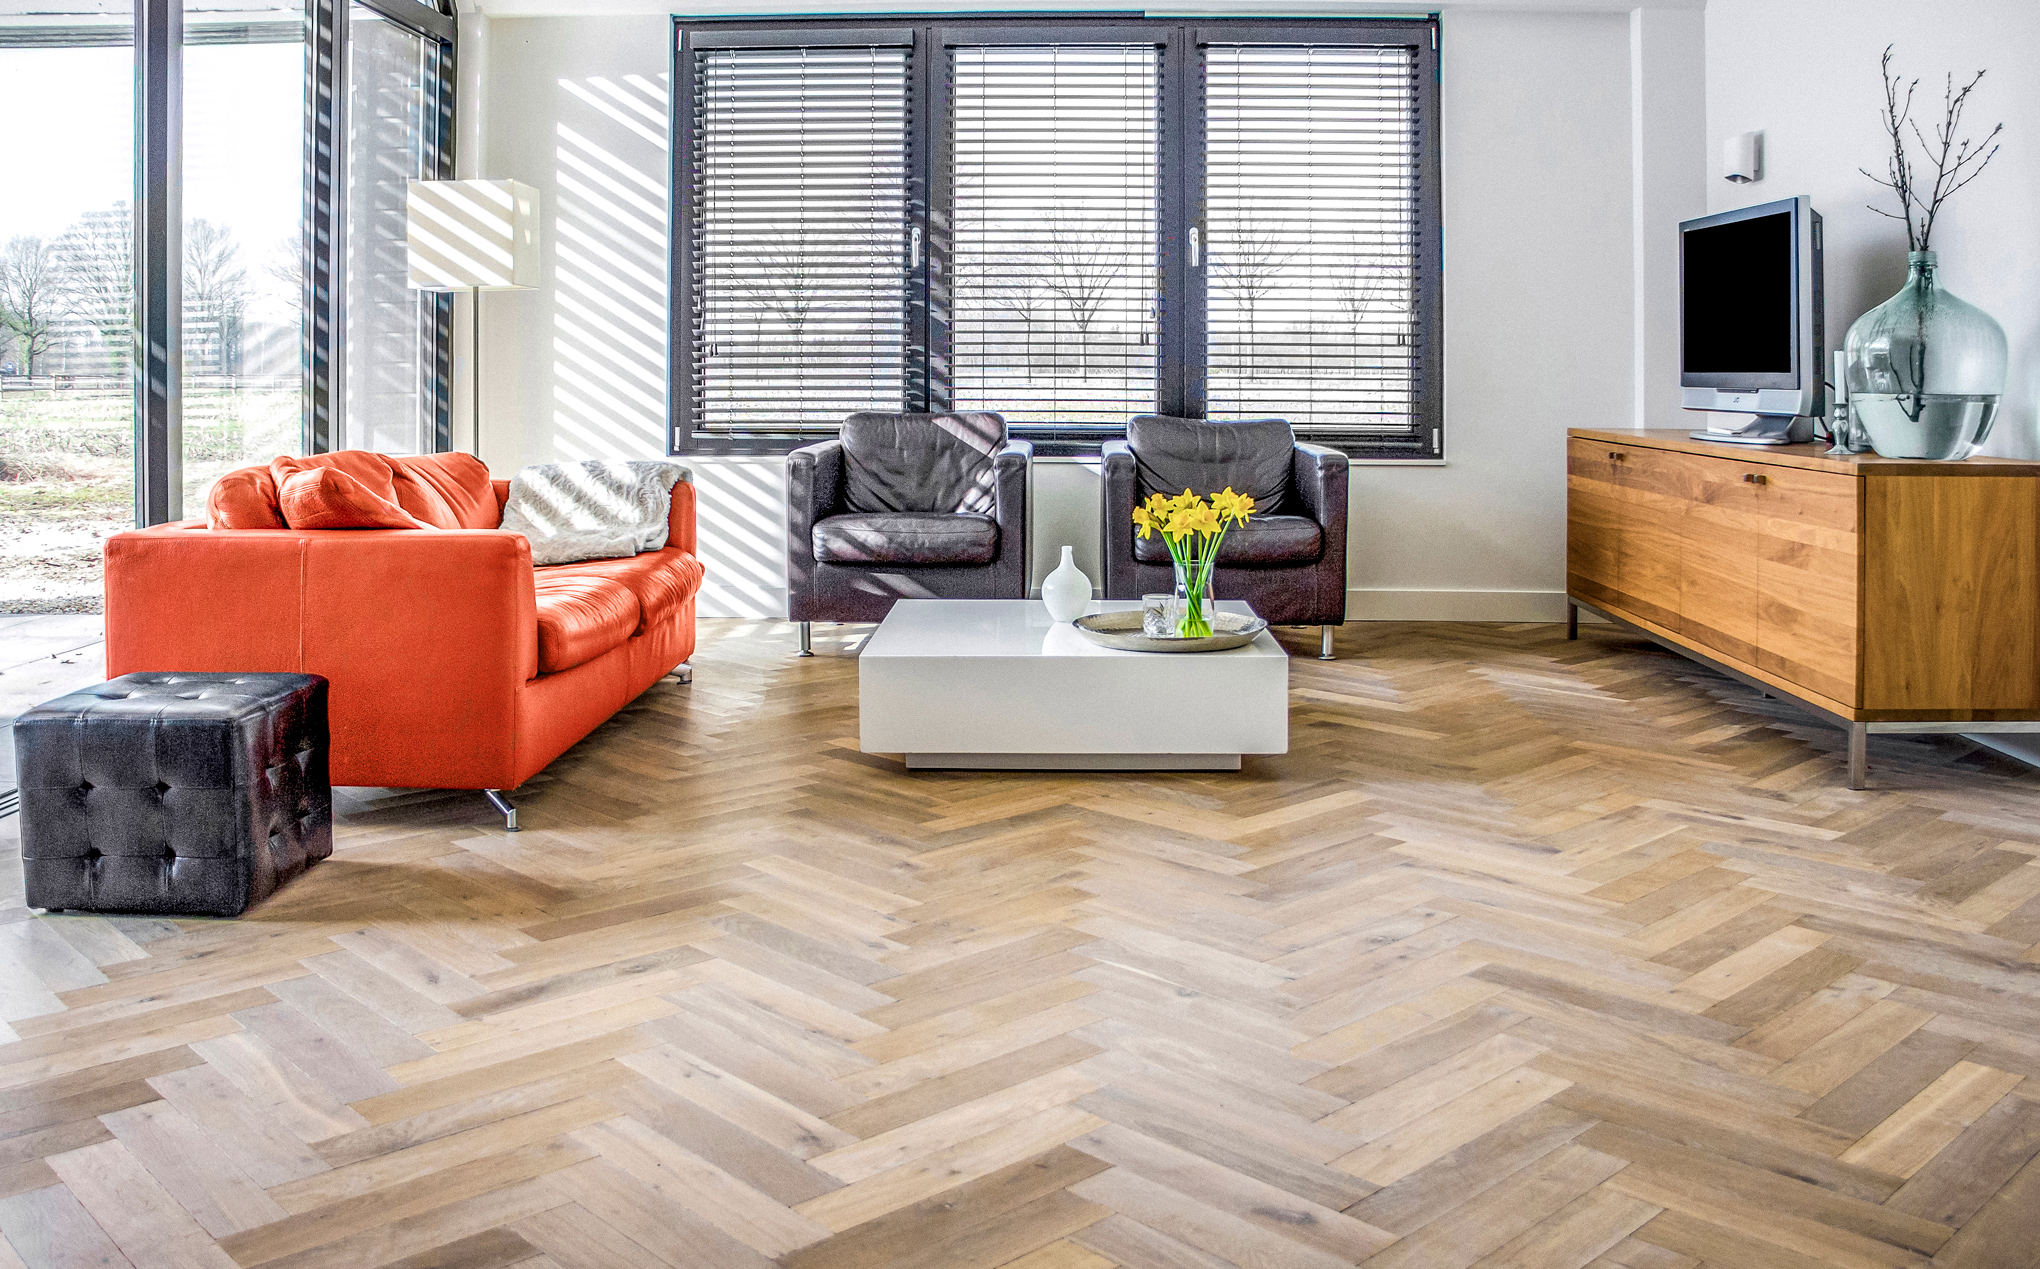 Foto : Gerookte & Verouderde houten vloer gelegd in Visgraat patroon